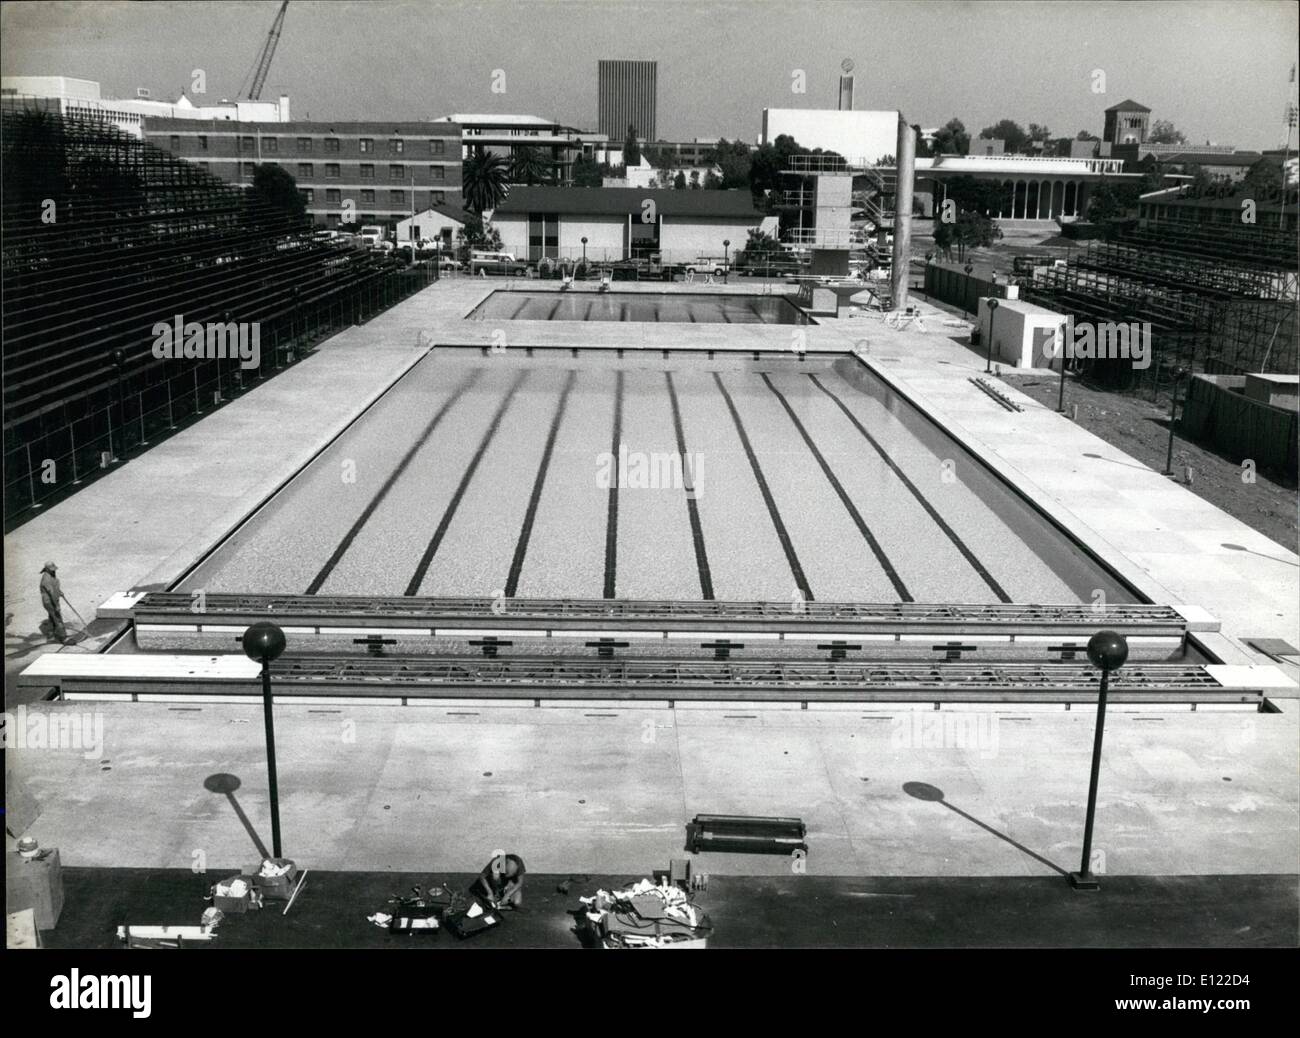 Juillet 07, 1983 - Un an avant les Jeux Olympiques de Los Angeles : le stade de natation à l'Université de Californie du sud au centre-ville de L.A. C'est un des deux seuls établissements nouvellement construits outre le vélodrome olympique. Pour tous les autres événements structure existante sera utilisée. Banque D'Images